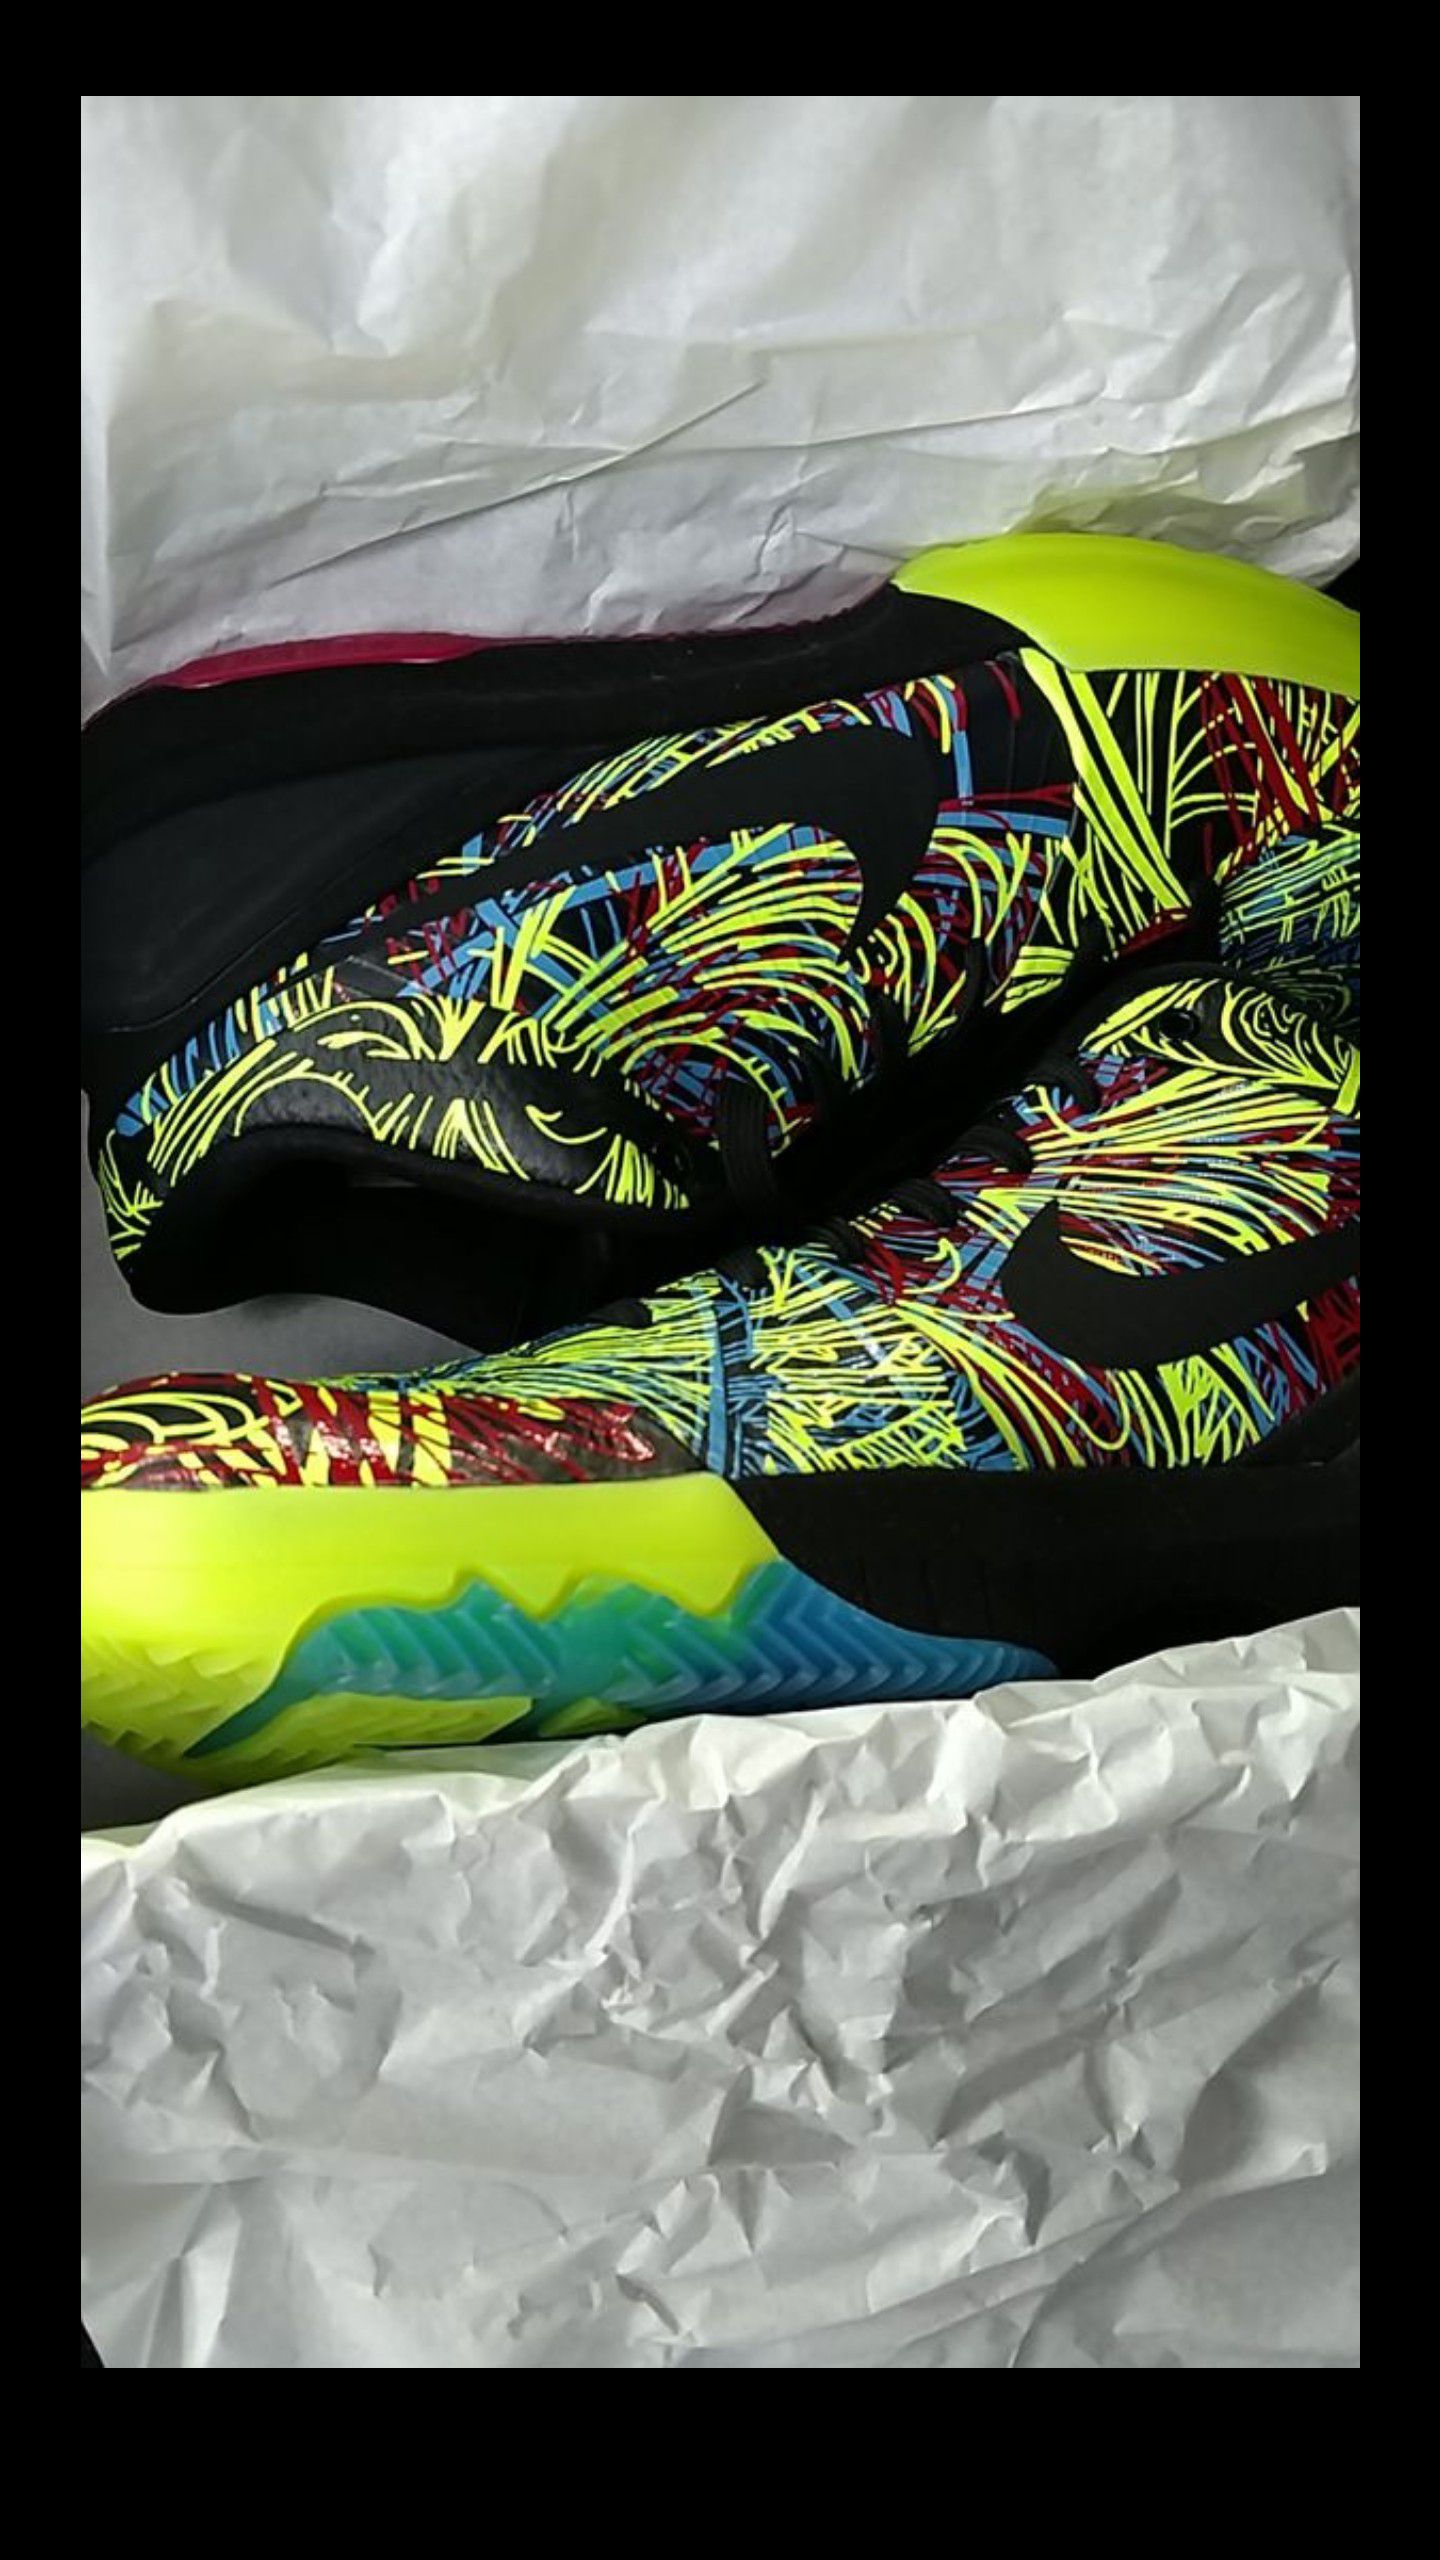 Kobe Bryant Nike size 11 KOBE IV protro wizenard shoes